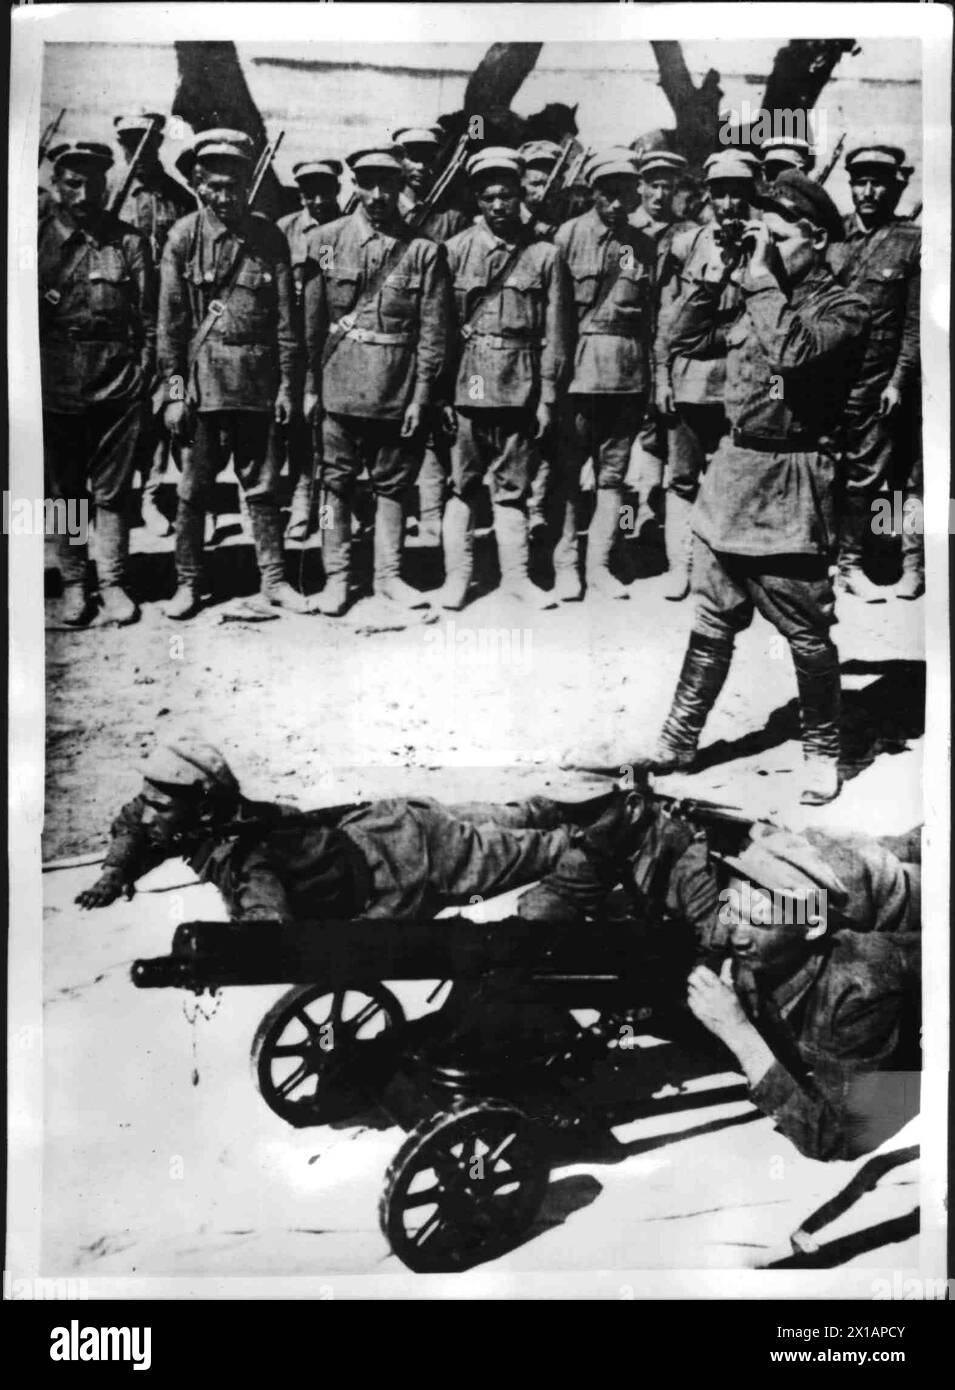 Service militaire, hommes d'un groupe ethnique asiatique intérieur lors d'un exercice sur le terrain, 1930 - 19300101 PD8422 - Rechteinfo : droits gérés (RM) Banque D'Images